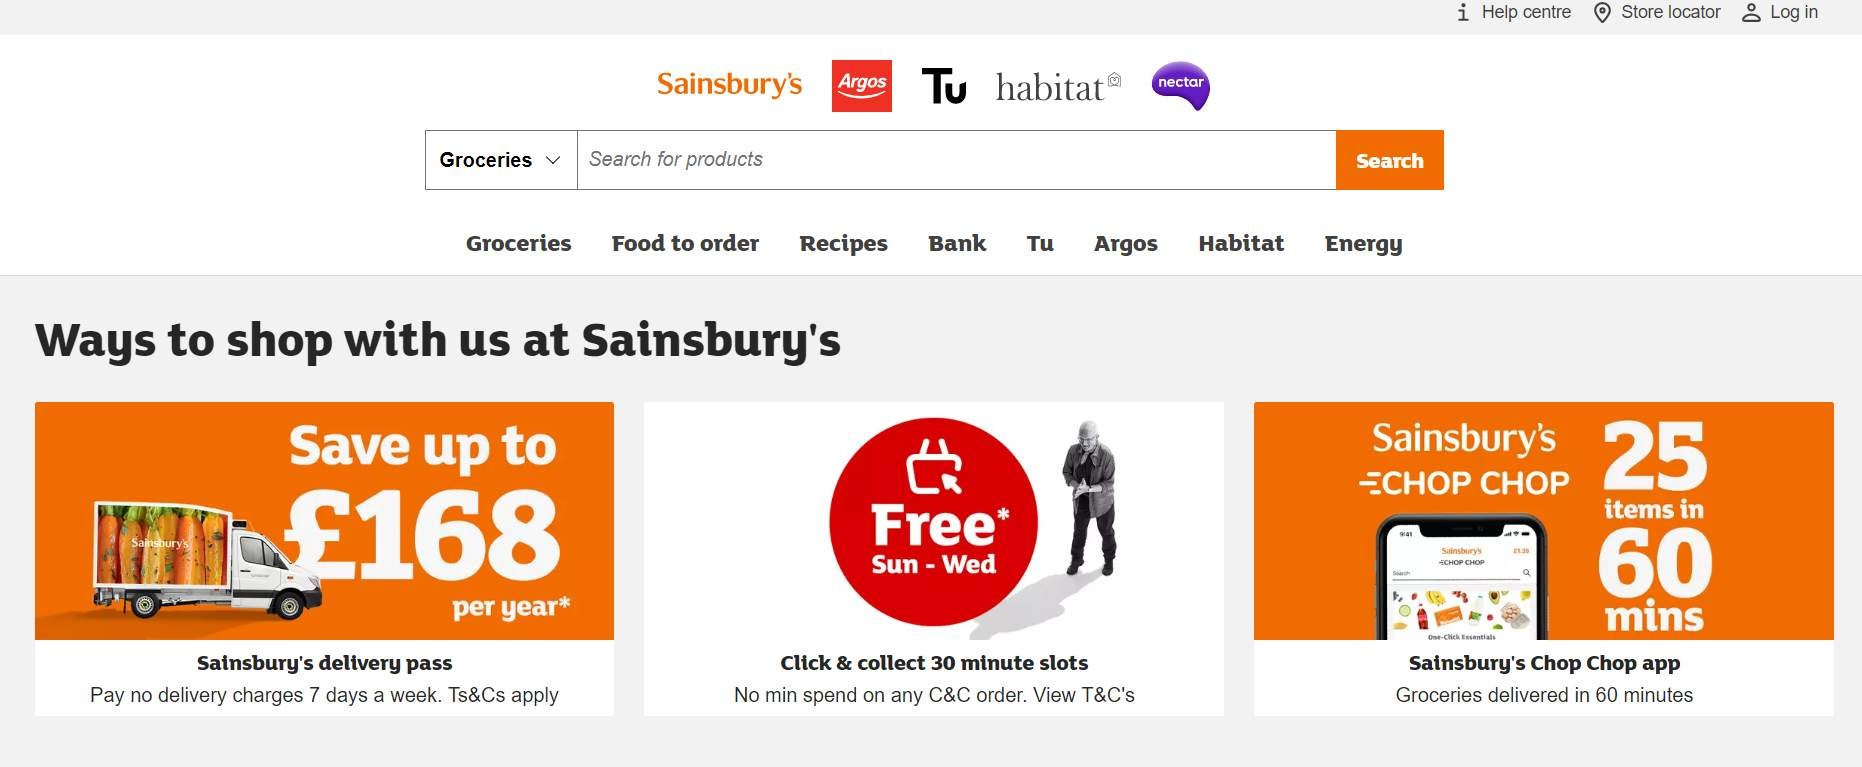 Marketing Strategy of Sainsbury's - e-com